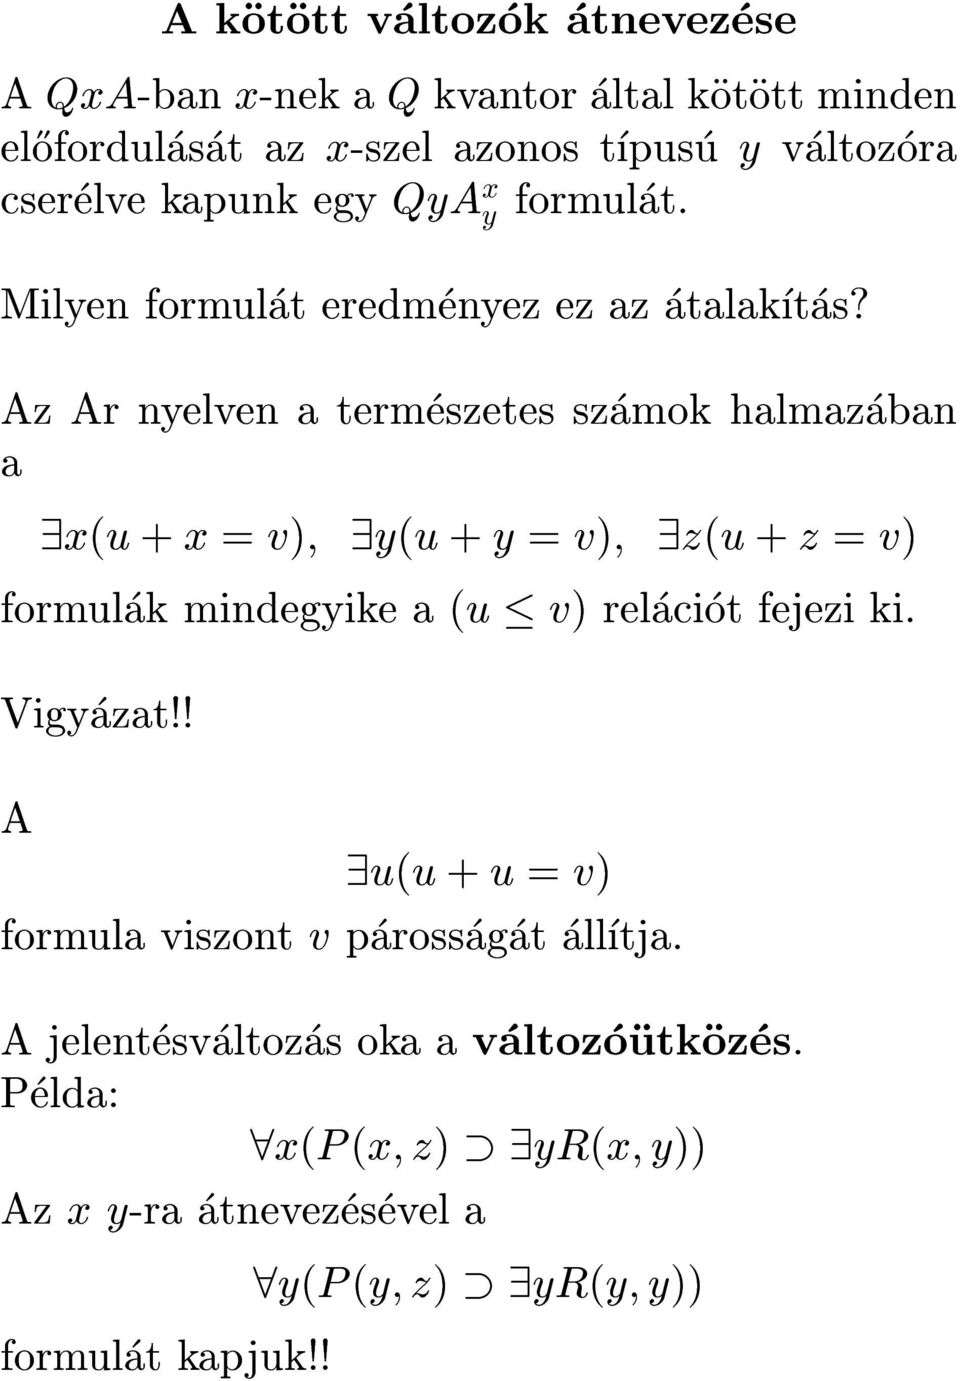 Az Ar nyelven a termeszetes szamok halmazaban a 9x(u + x = v); 9y(u + y = v); 9z(u + z = v) formulak mindegyike a (u v) relaciot fejezi